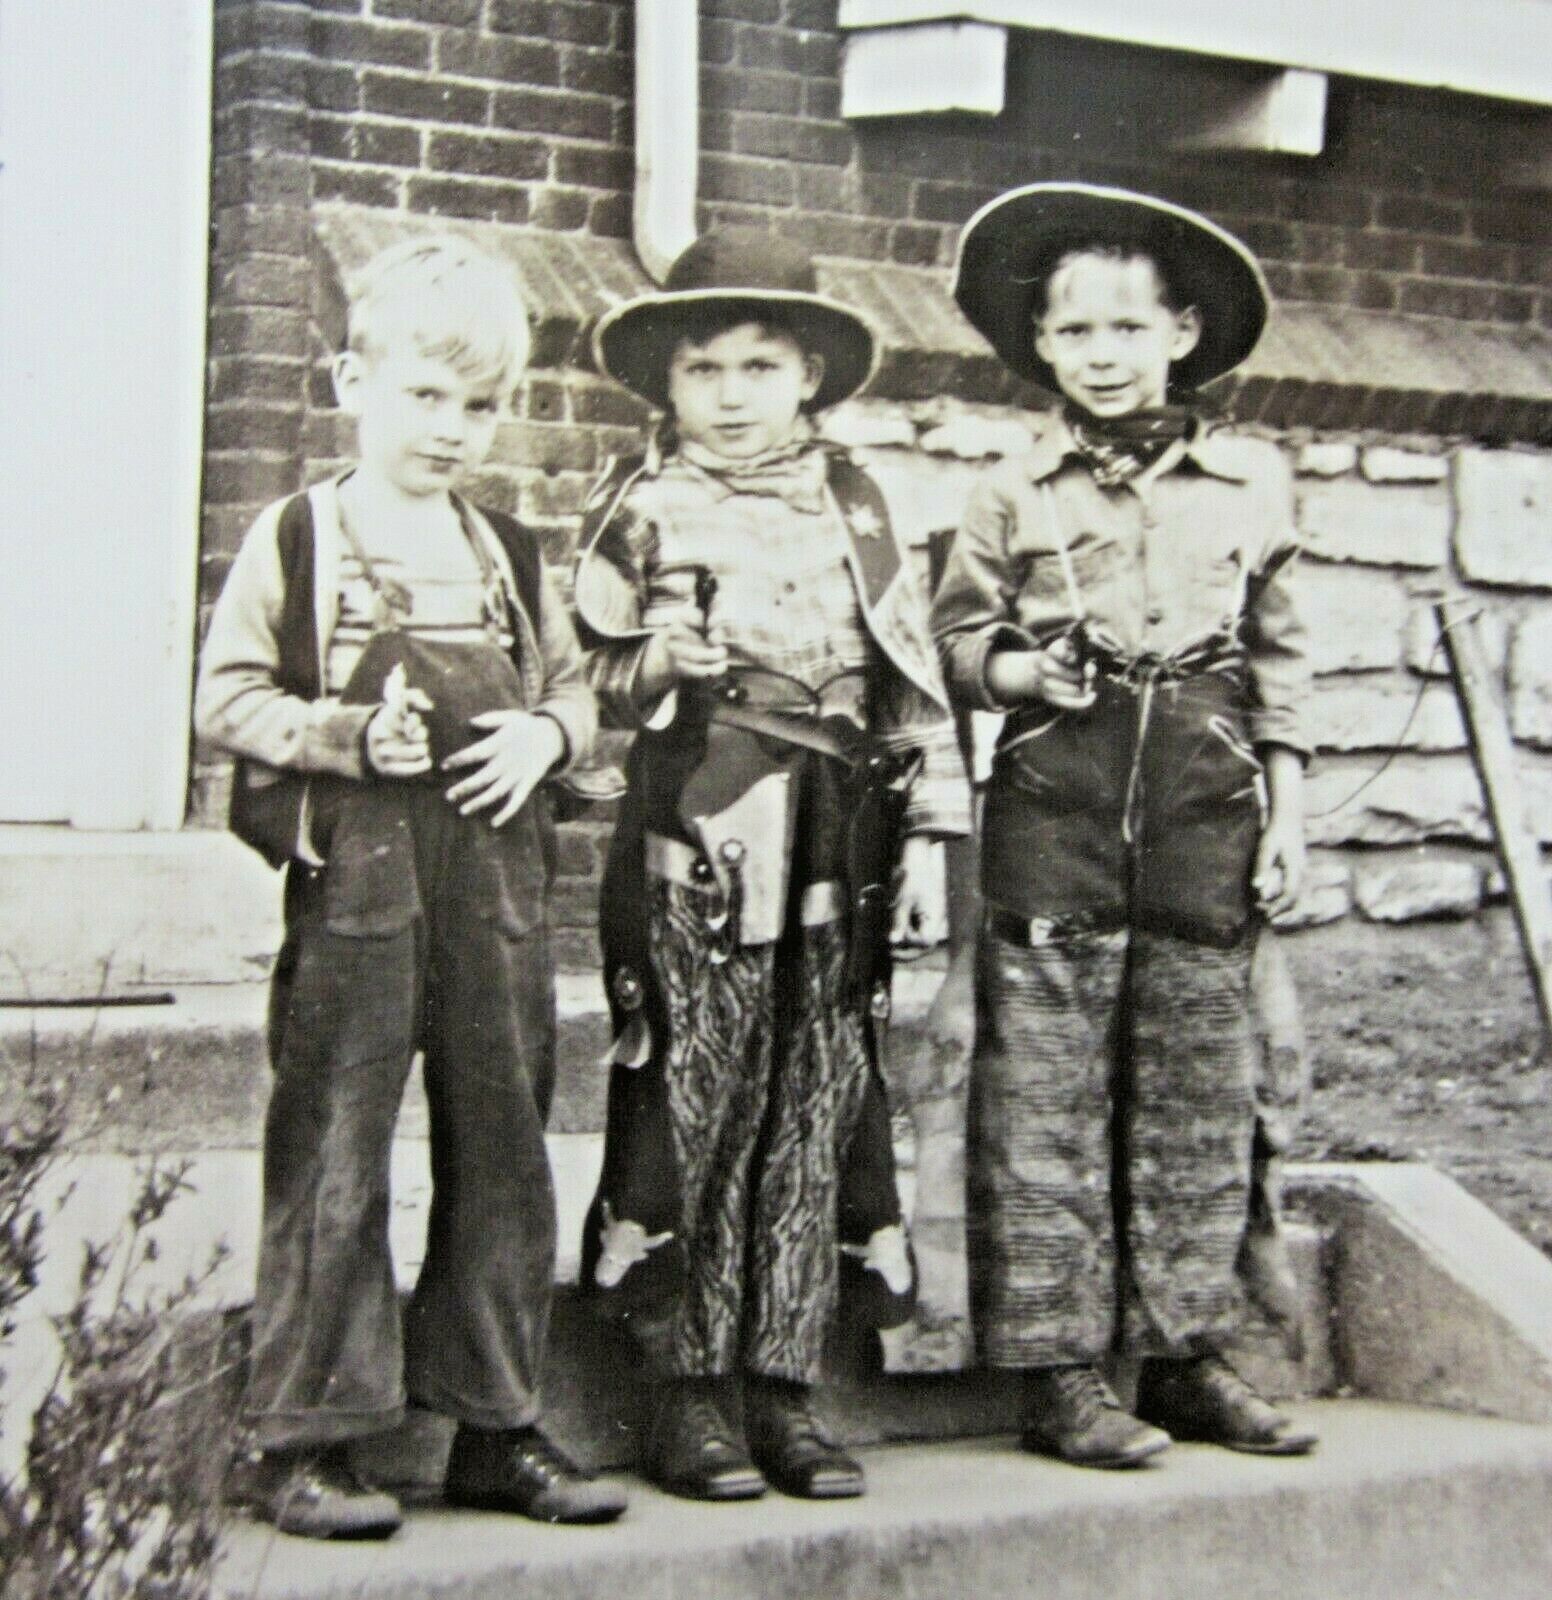 Vintage Cap Gun Cowboy Posse Photo Western Outfits Chaps Hats c. 1940-50\'s